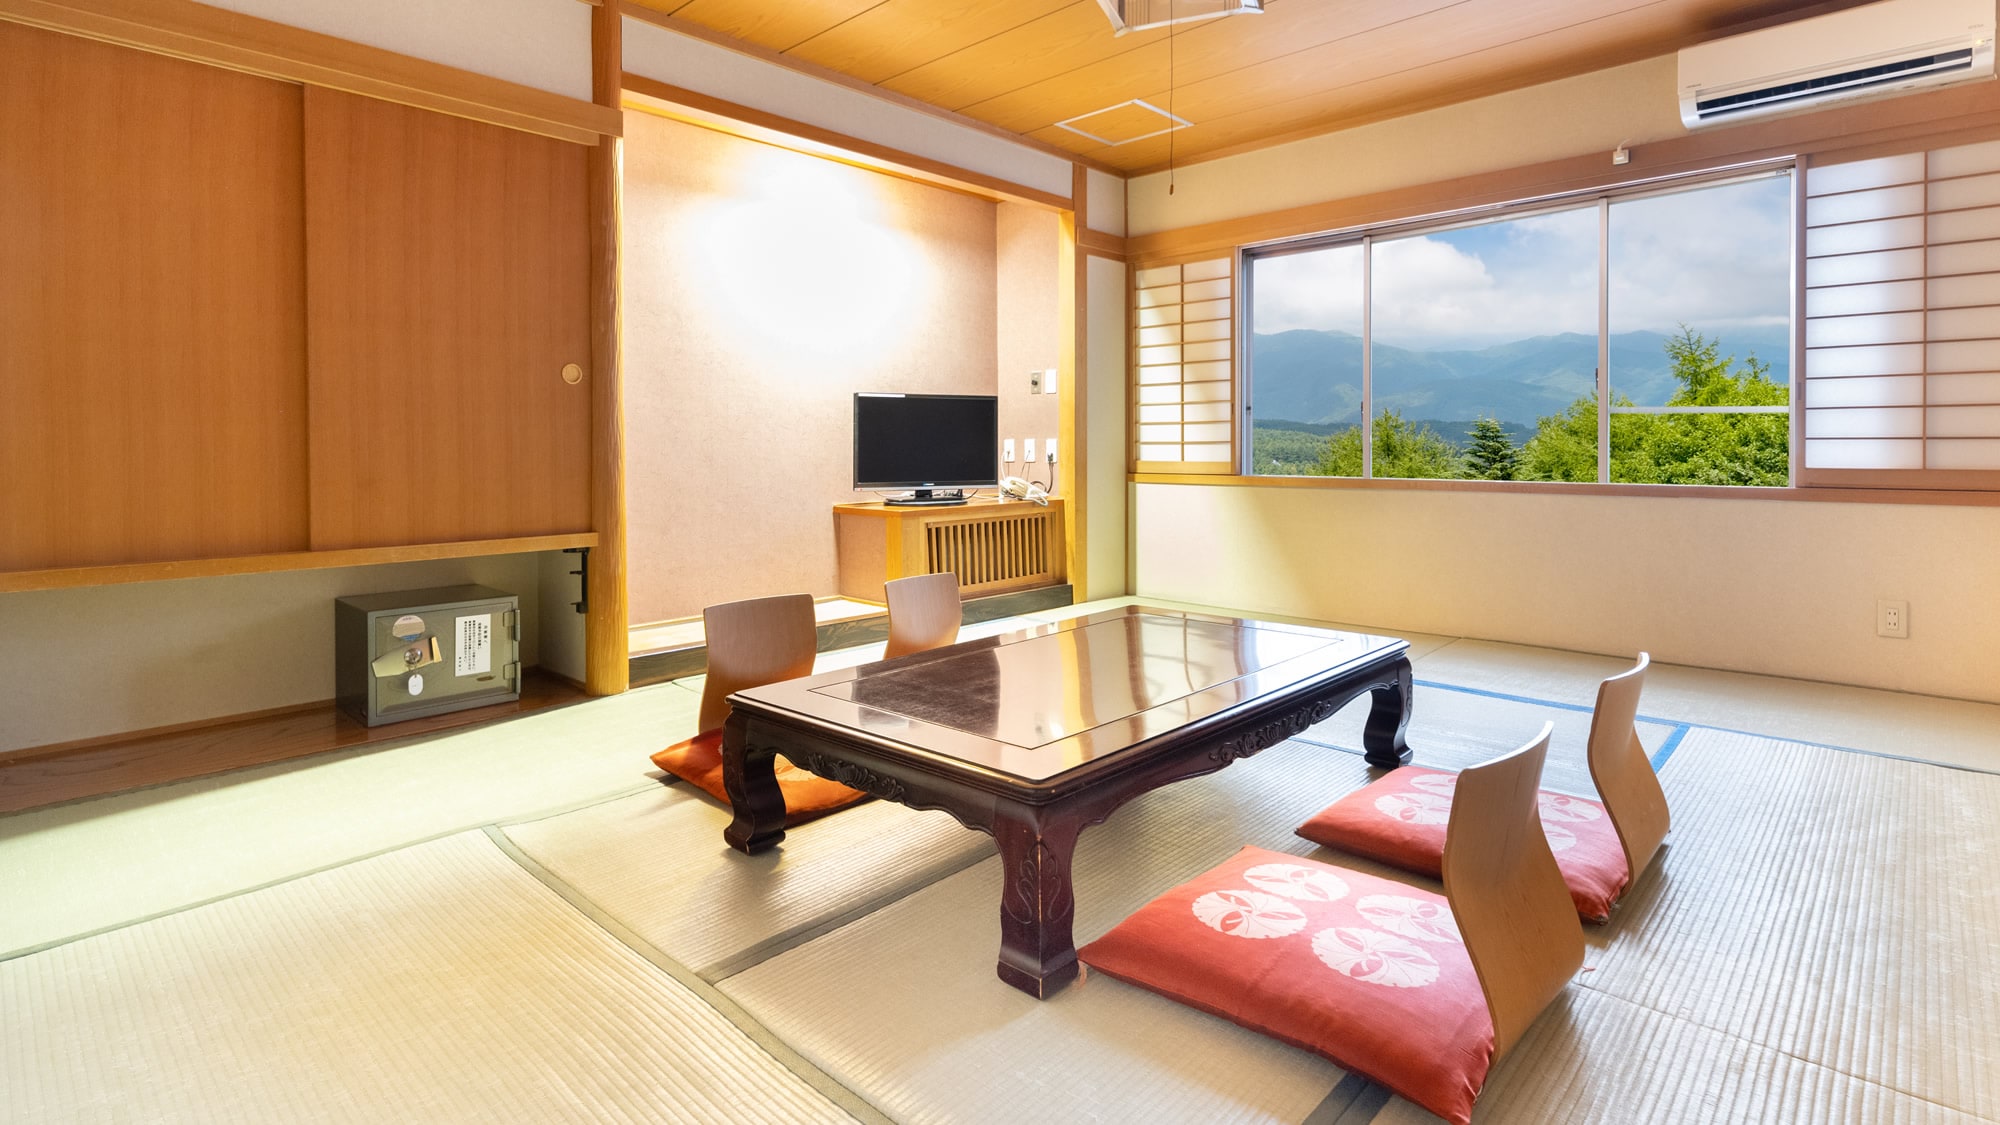 【日式房間10張榻榻米+8張榻榻米】房間有兩個獨立的日式房間